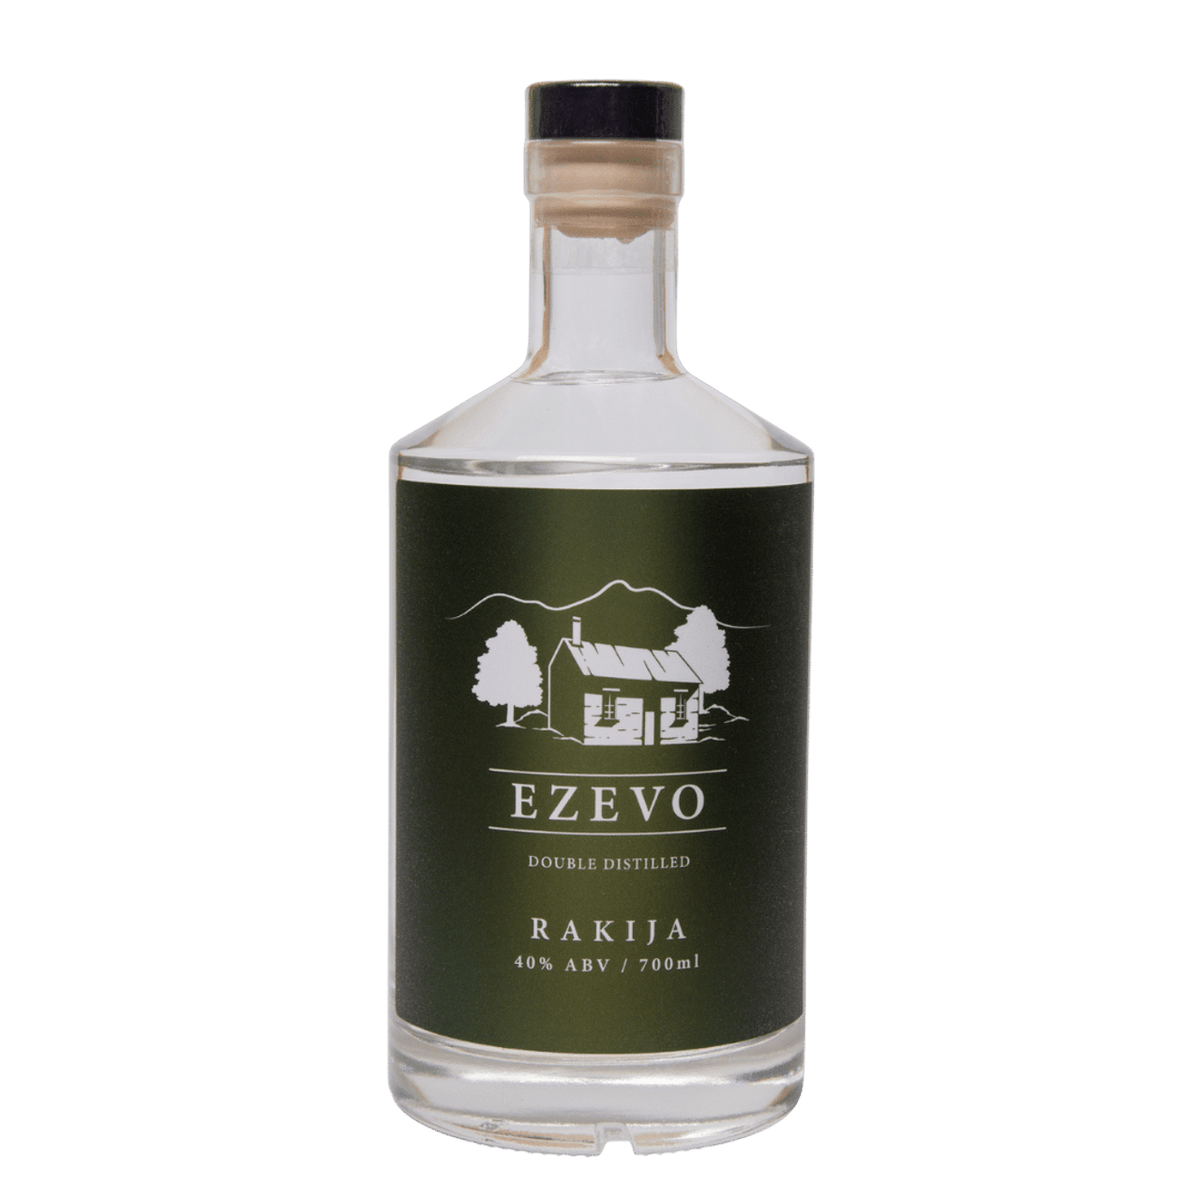 Ezevo Double Distilled Rakija 700ml